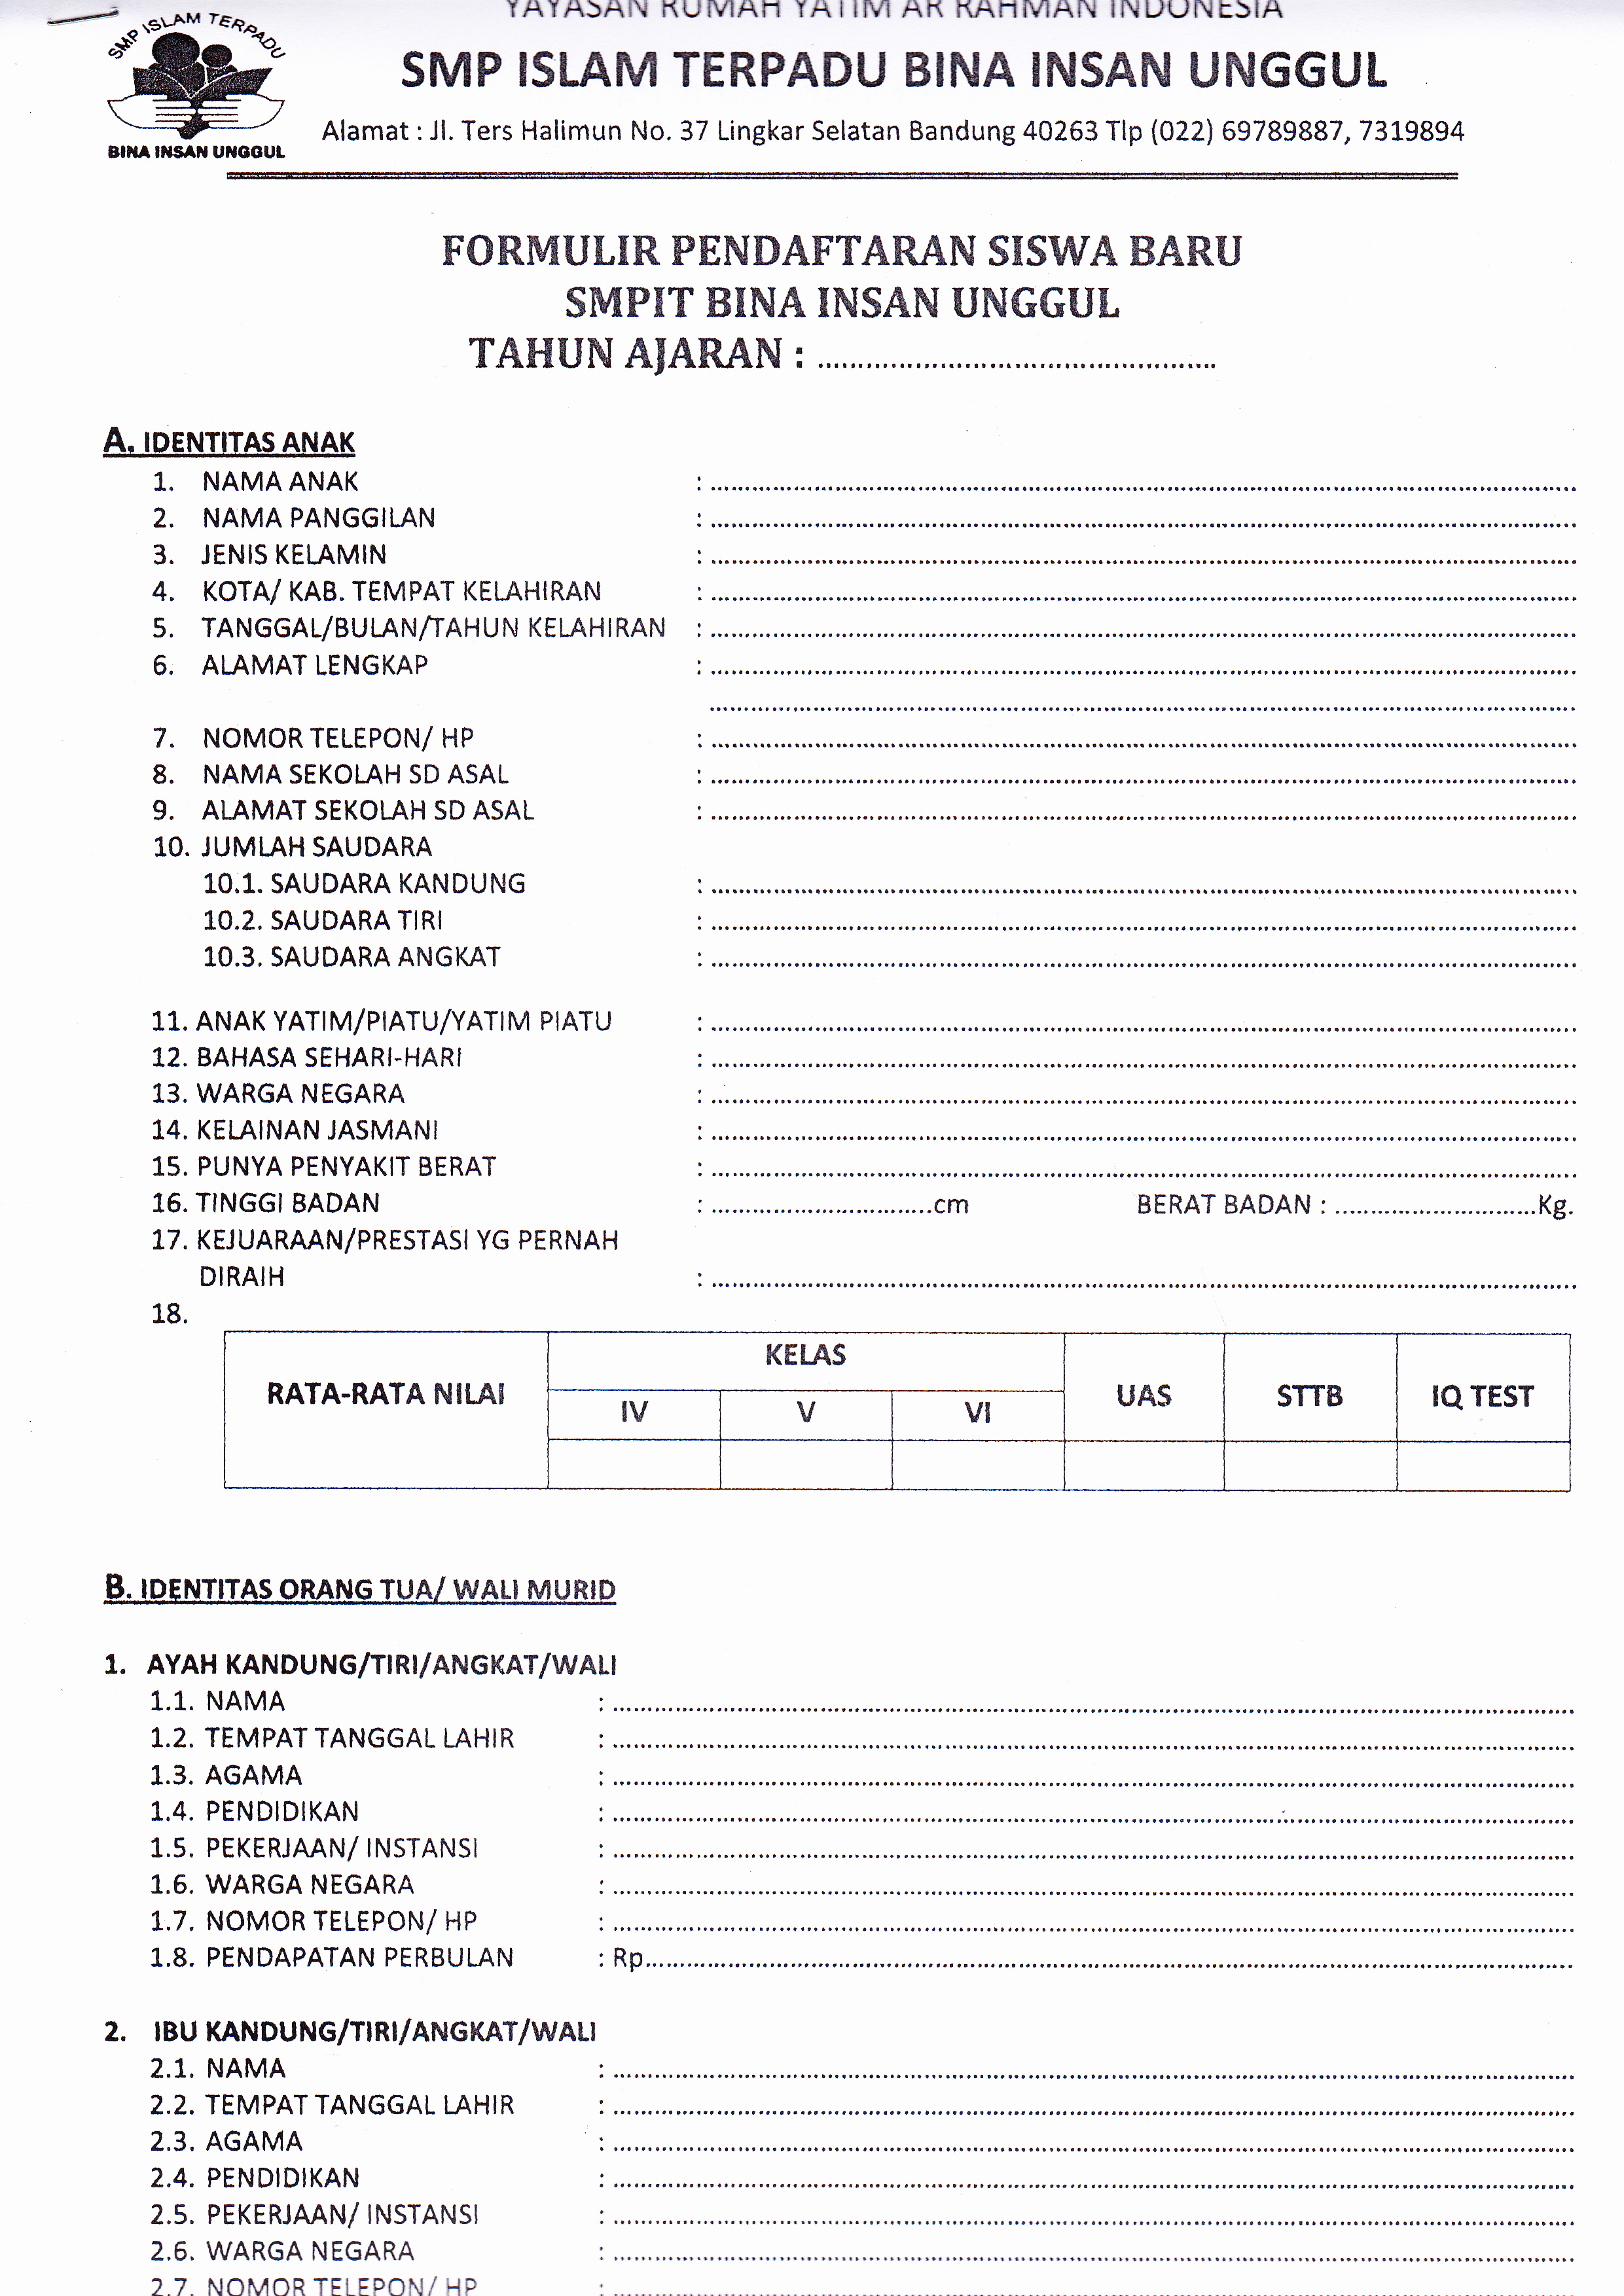 ekstrakurikuler formulir pendaftaran Contoh Formulir Contoh Pendaftaran   36